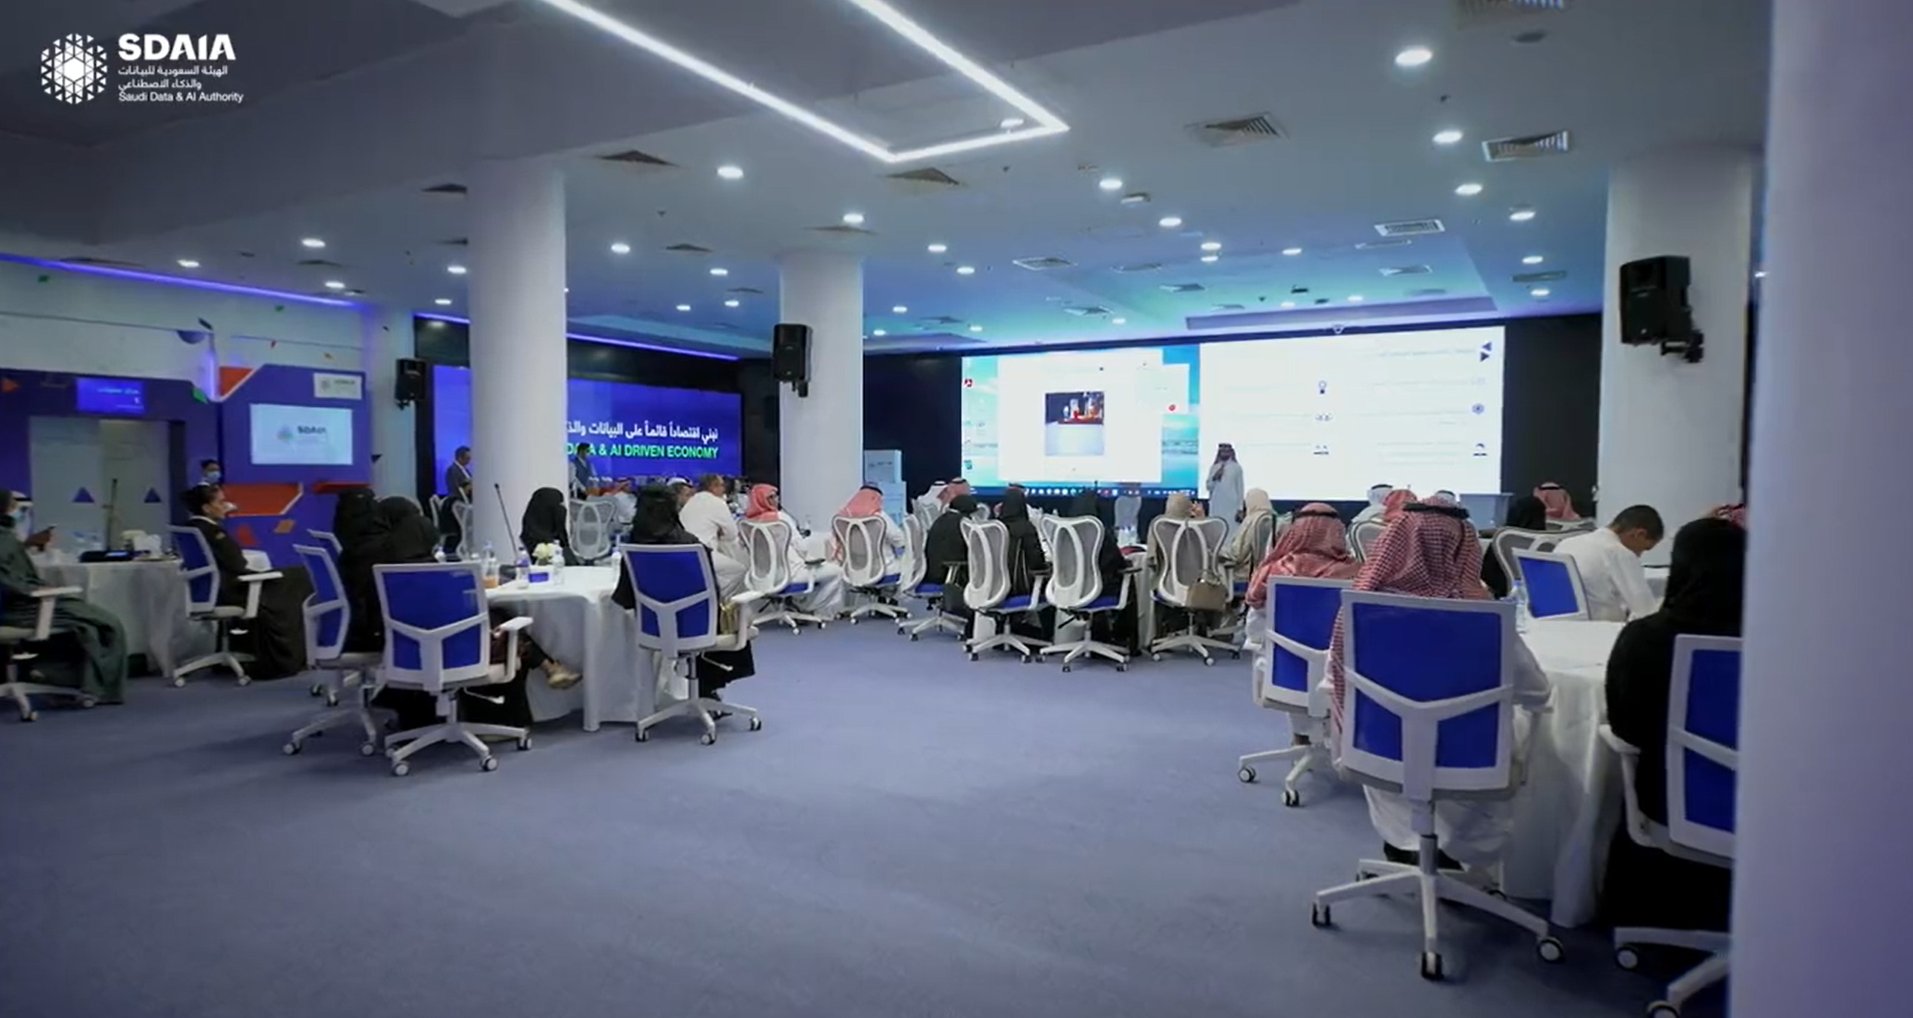 商湯在沙特實施人工智能教育計劃，為當地教師和學生提供成熟的人工智能課程.jpg